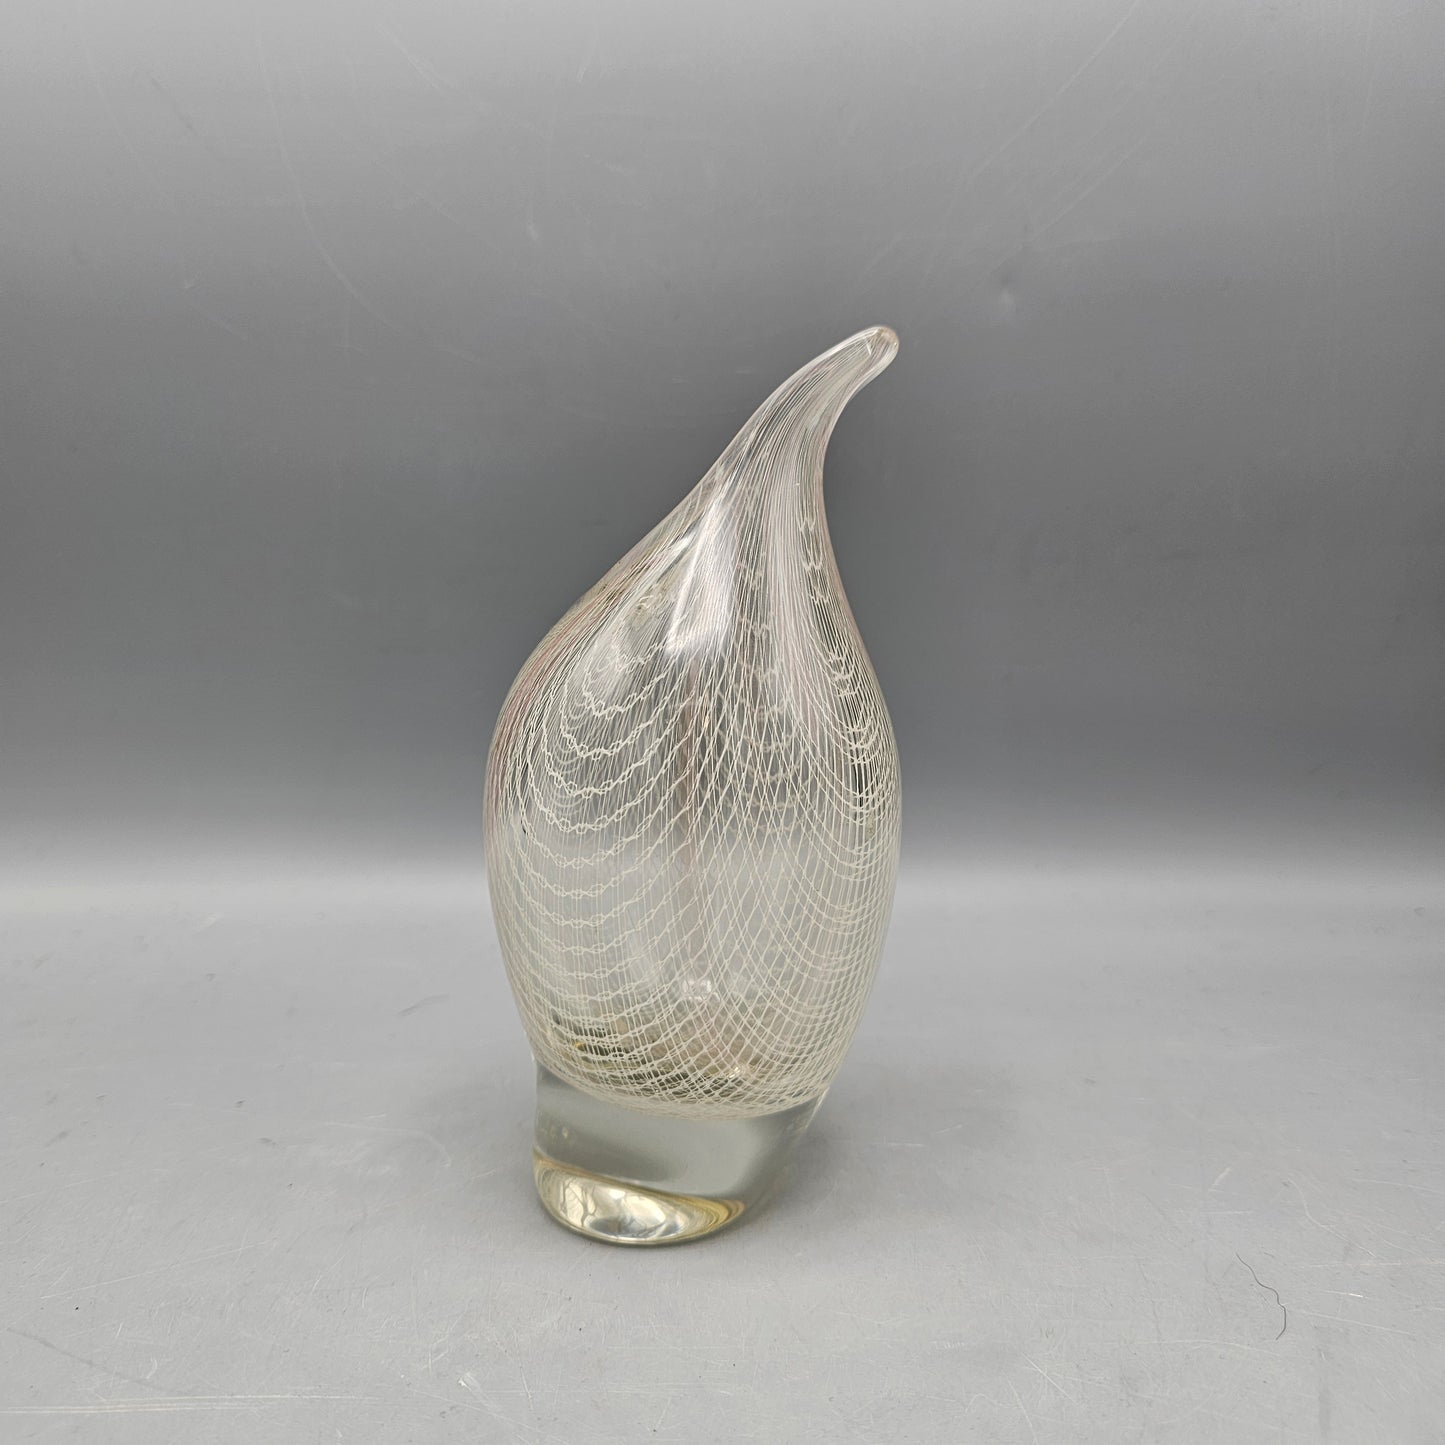 Harrach Harrtil Merletto Art Glass Vase